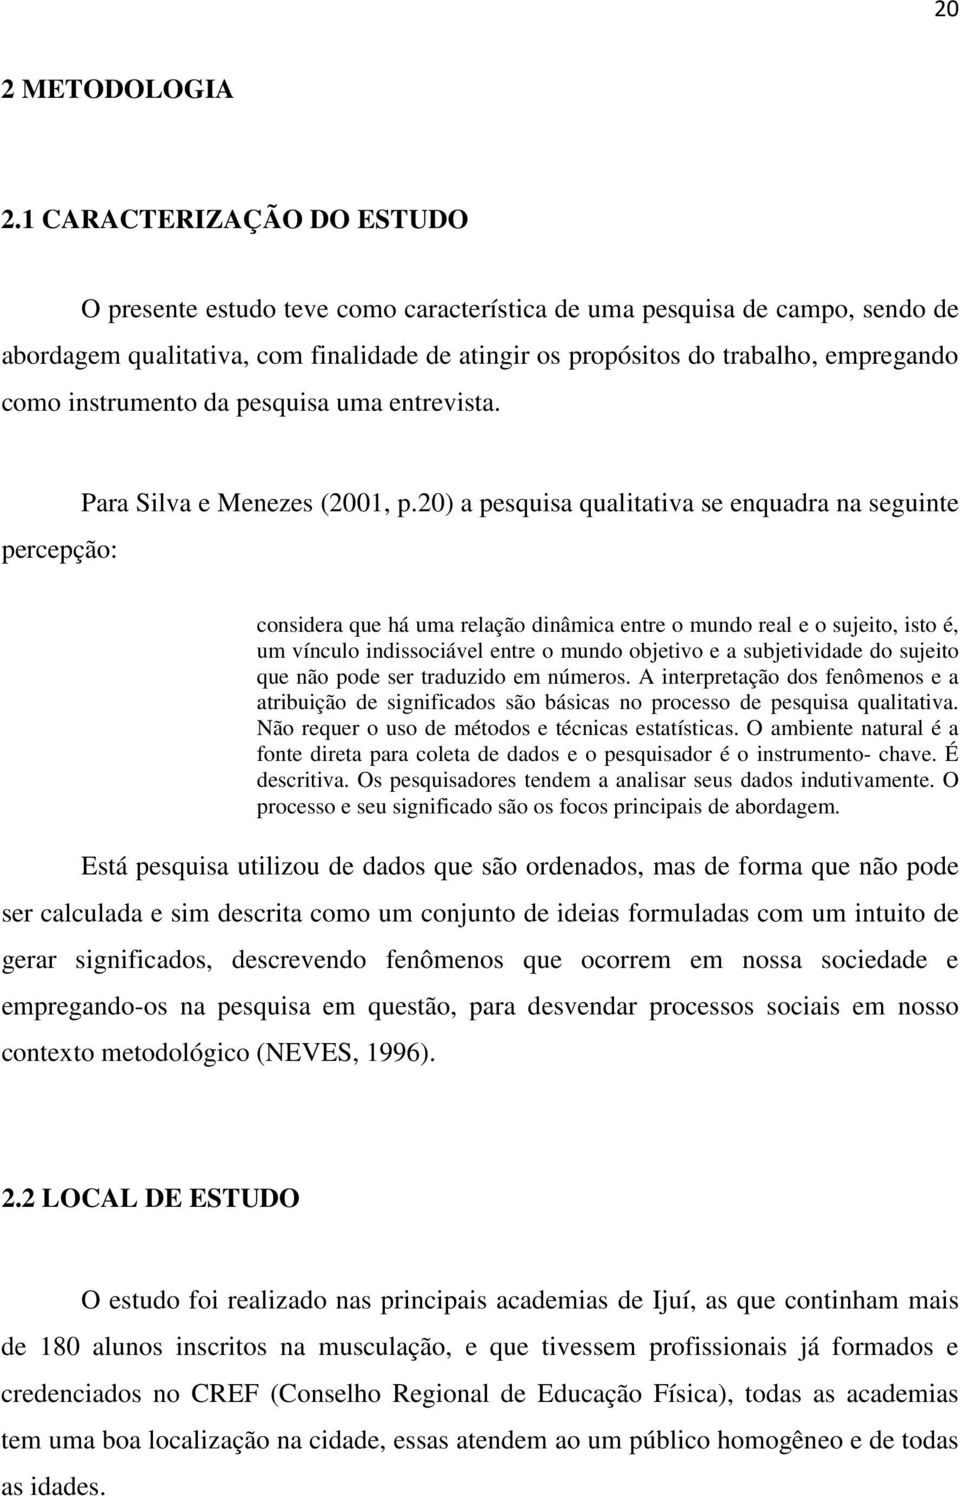 instrumento da pesquisa uma entrevista. percepção: Para Silva e Menezes (2001, p.